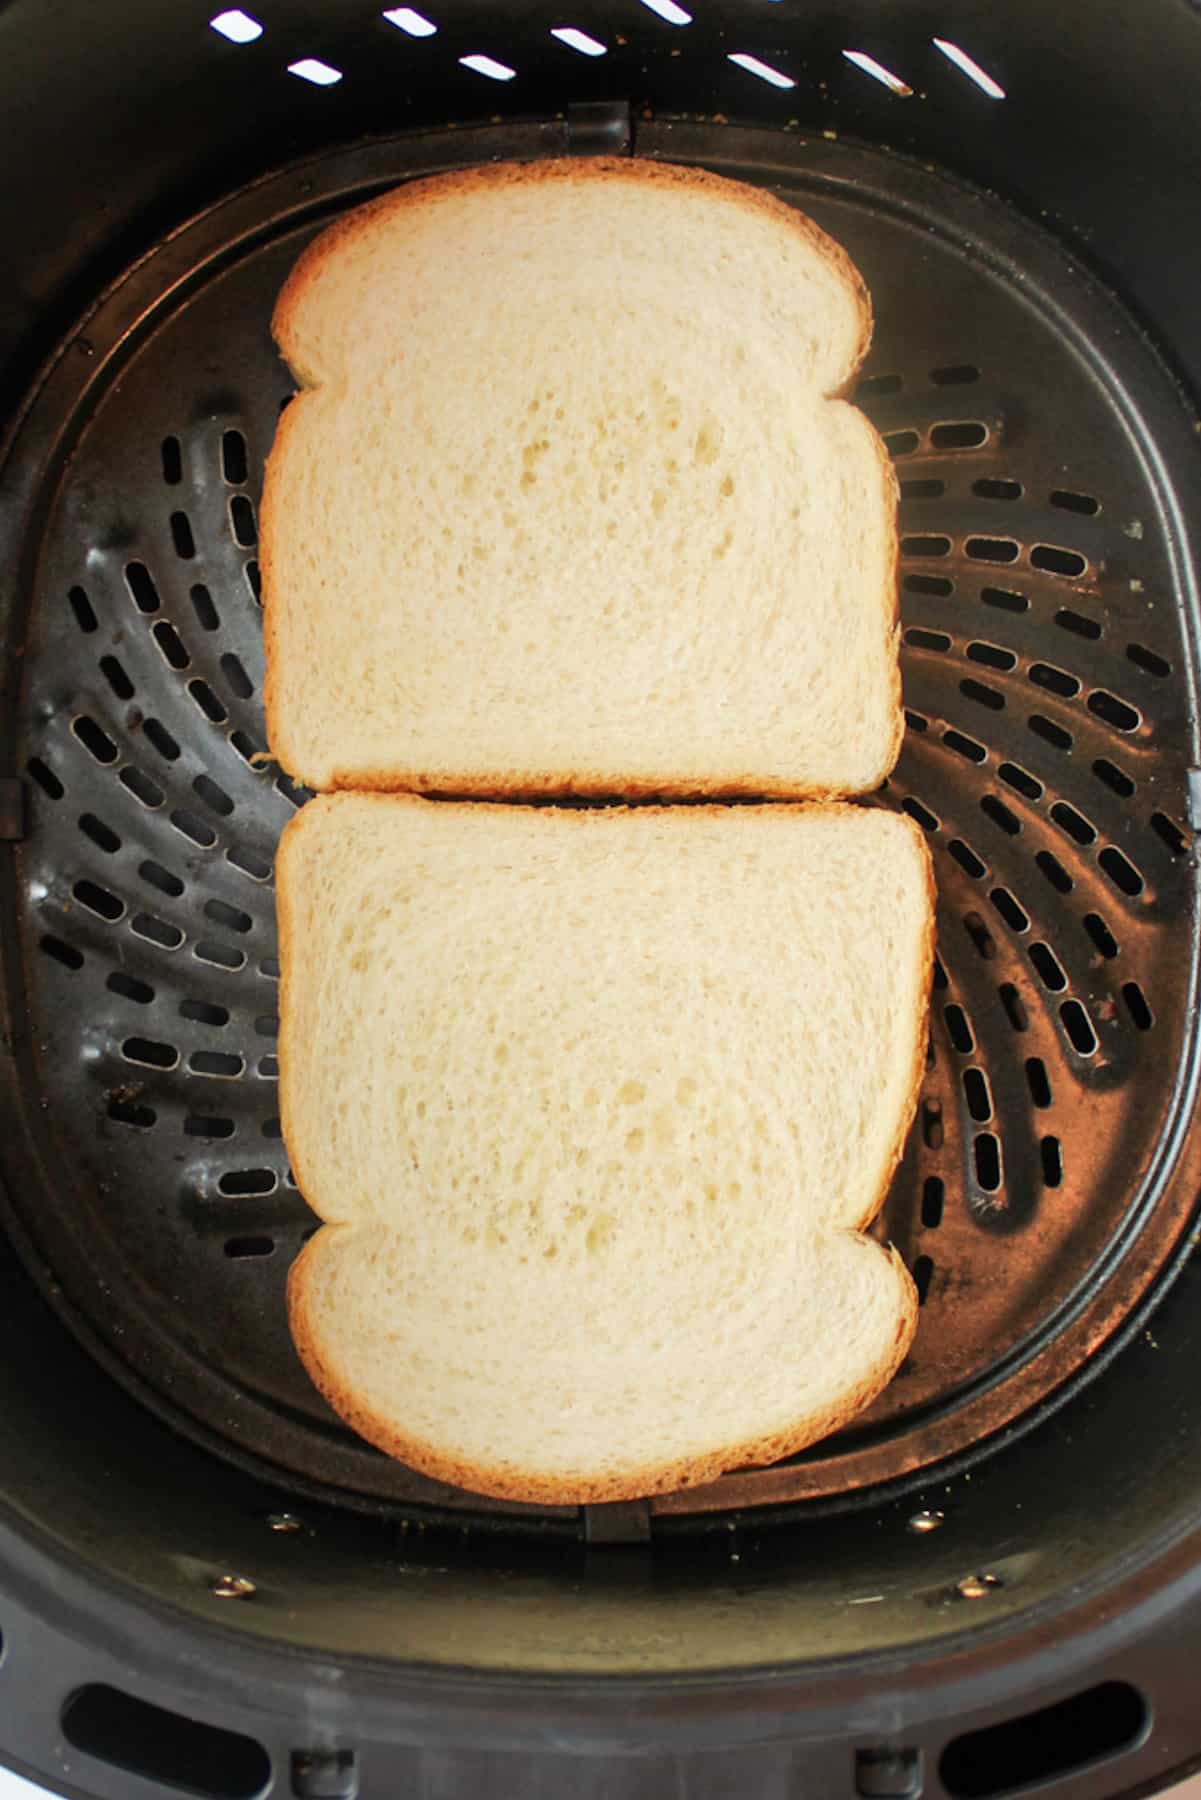 sandwich bread butter side down in an air fryer basket